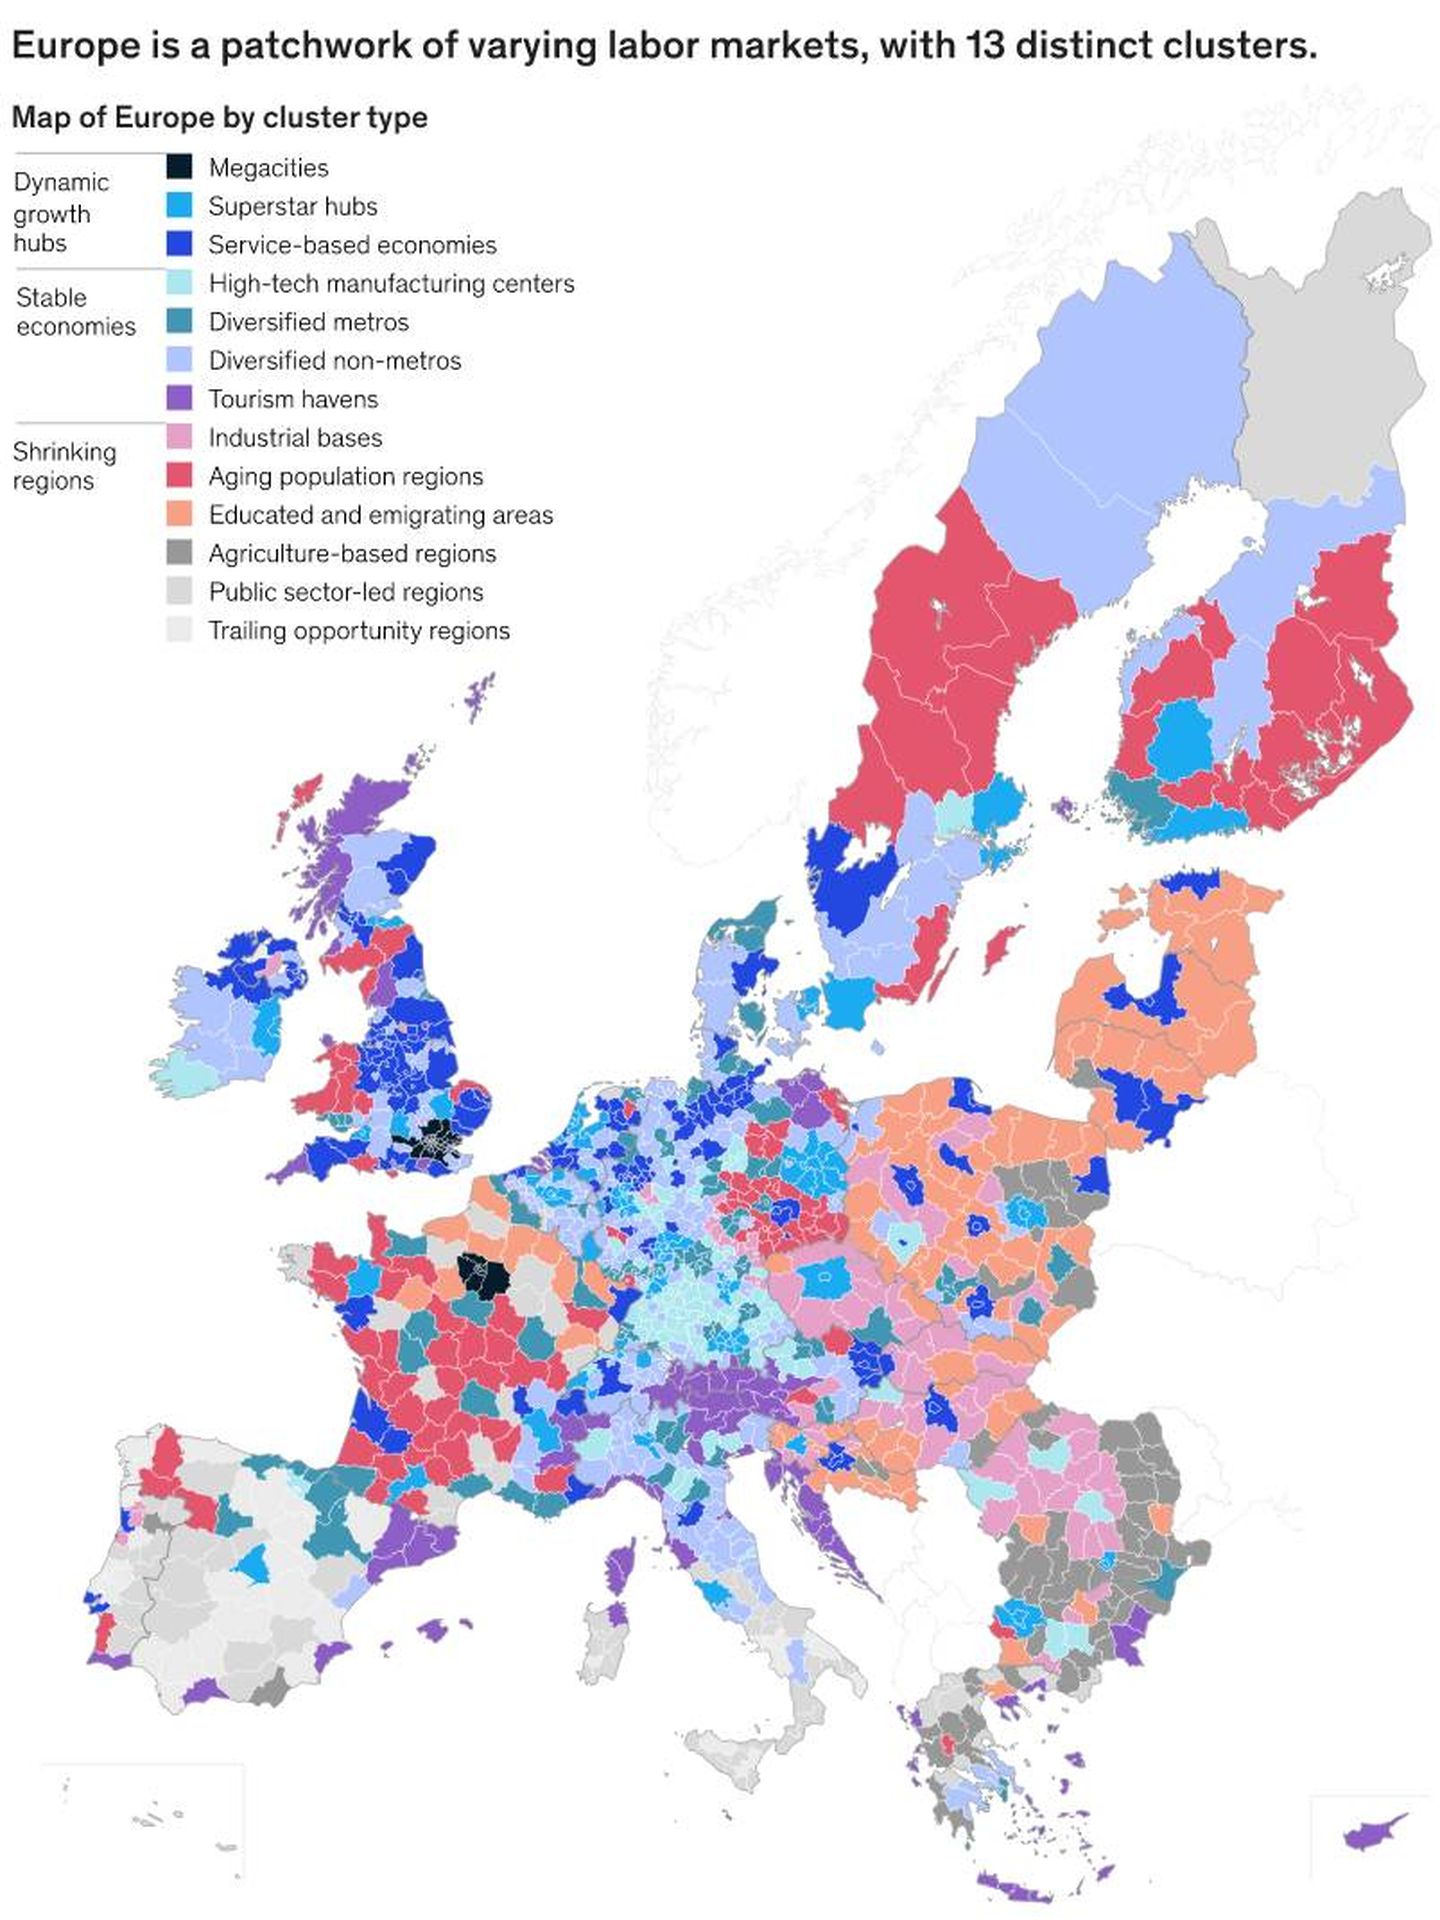 Los clústeres del mercado laboral en Europa. (McKinsey)